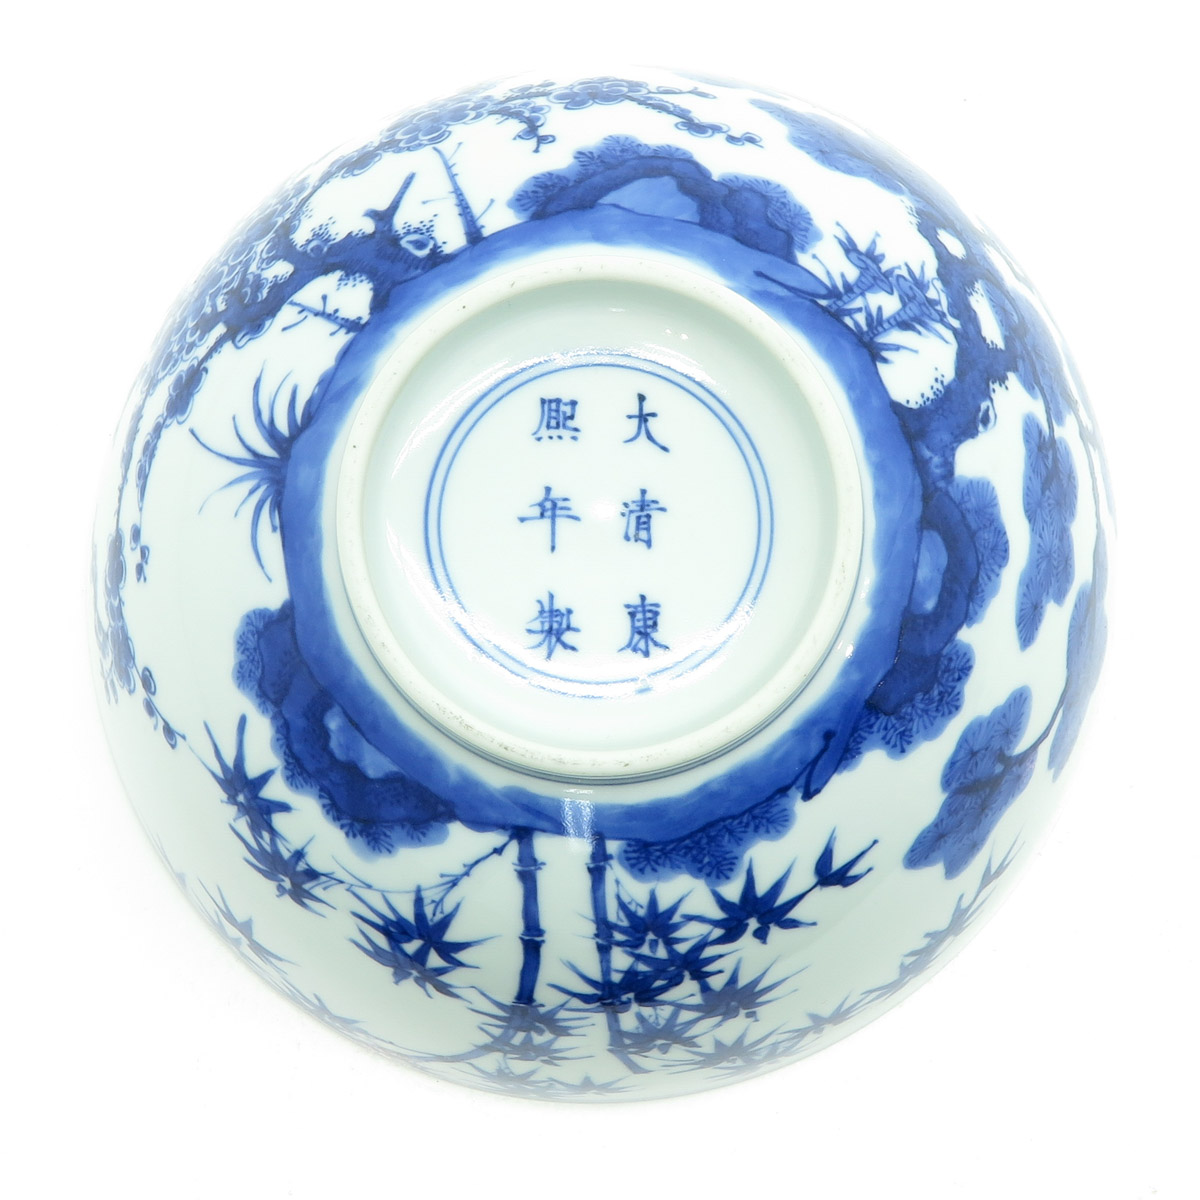 China Porcelain Bowl - Image 6 of 6